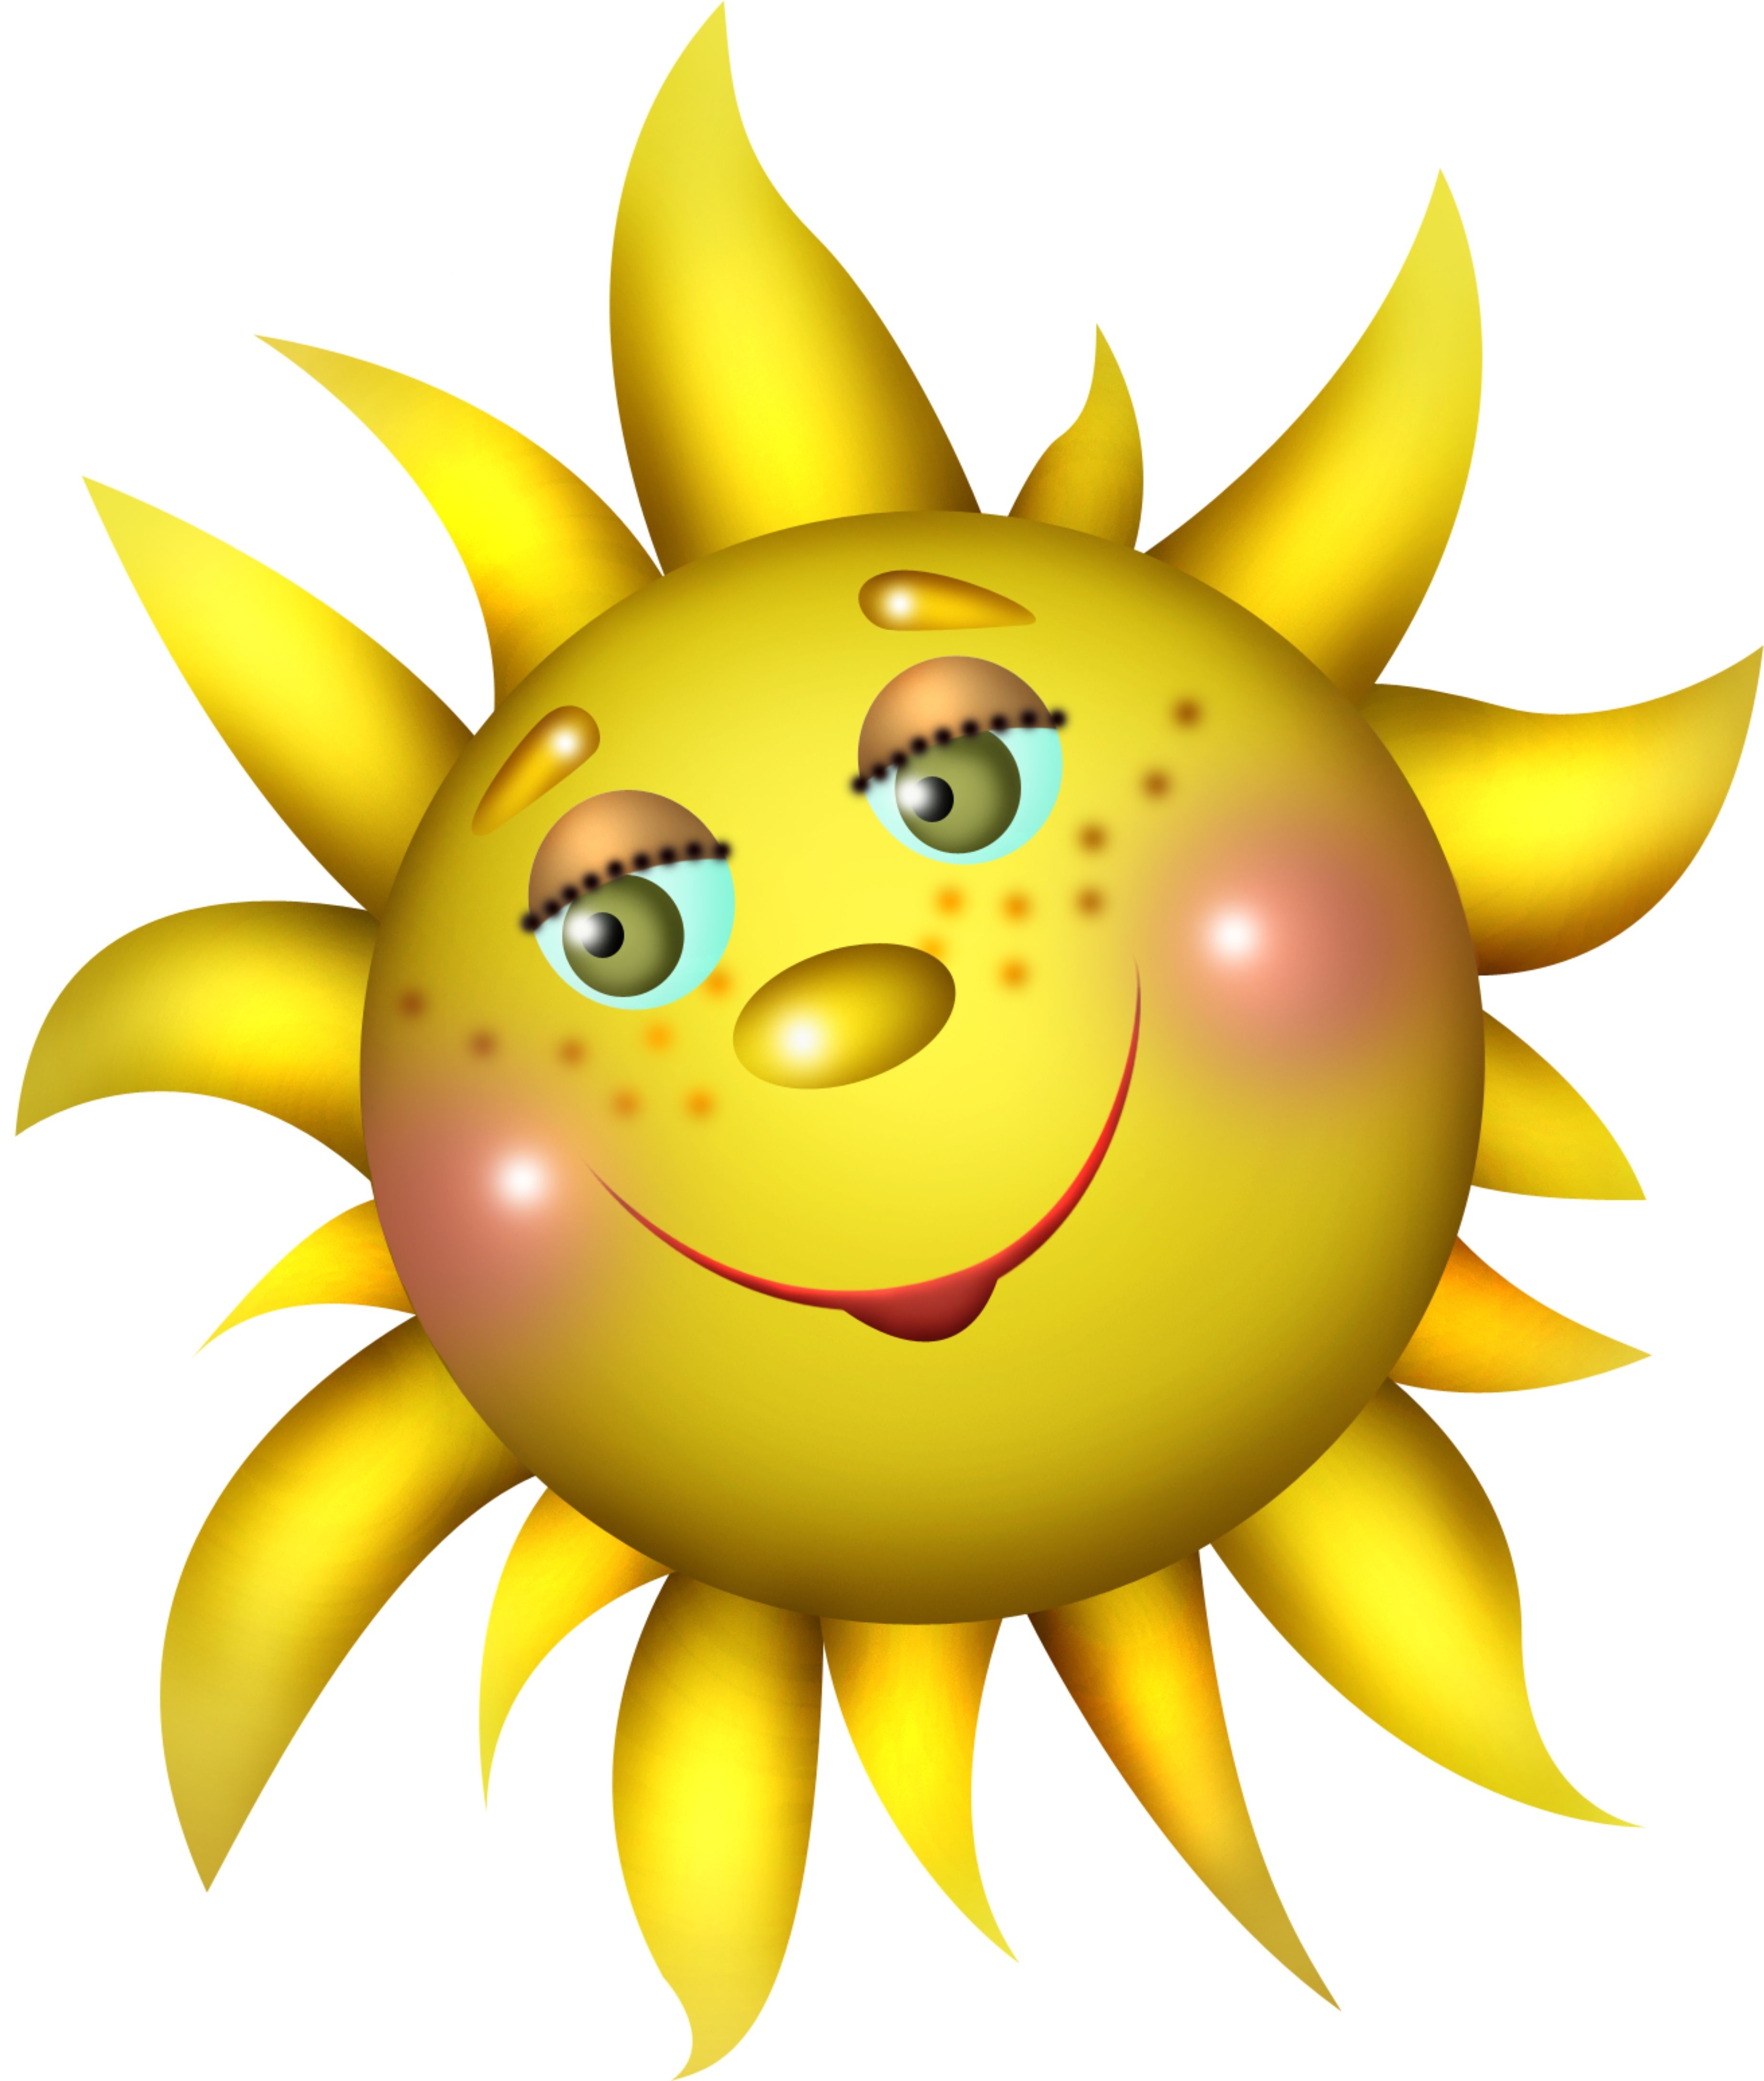 Солнышко в очках картинка для детей